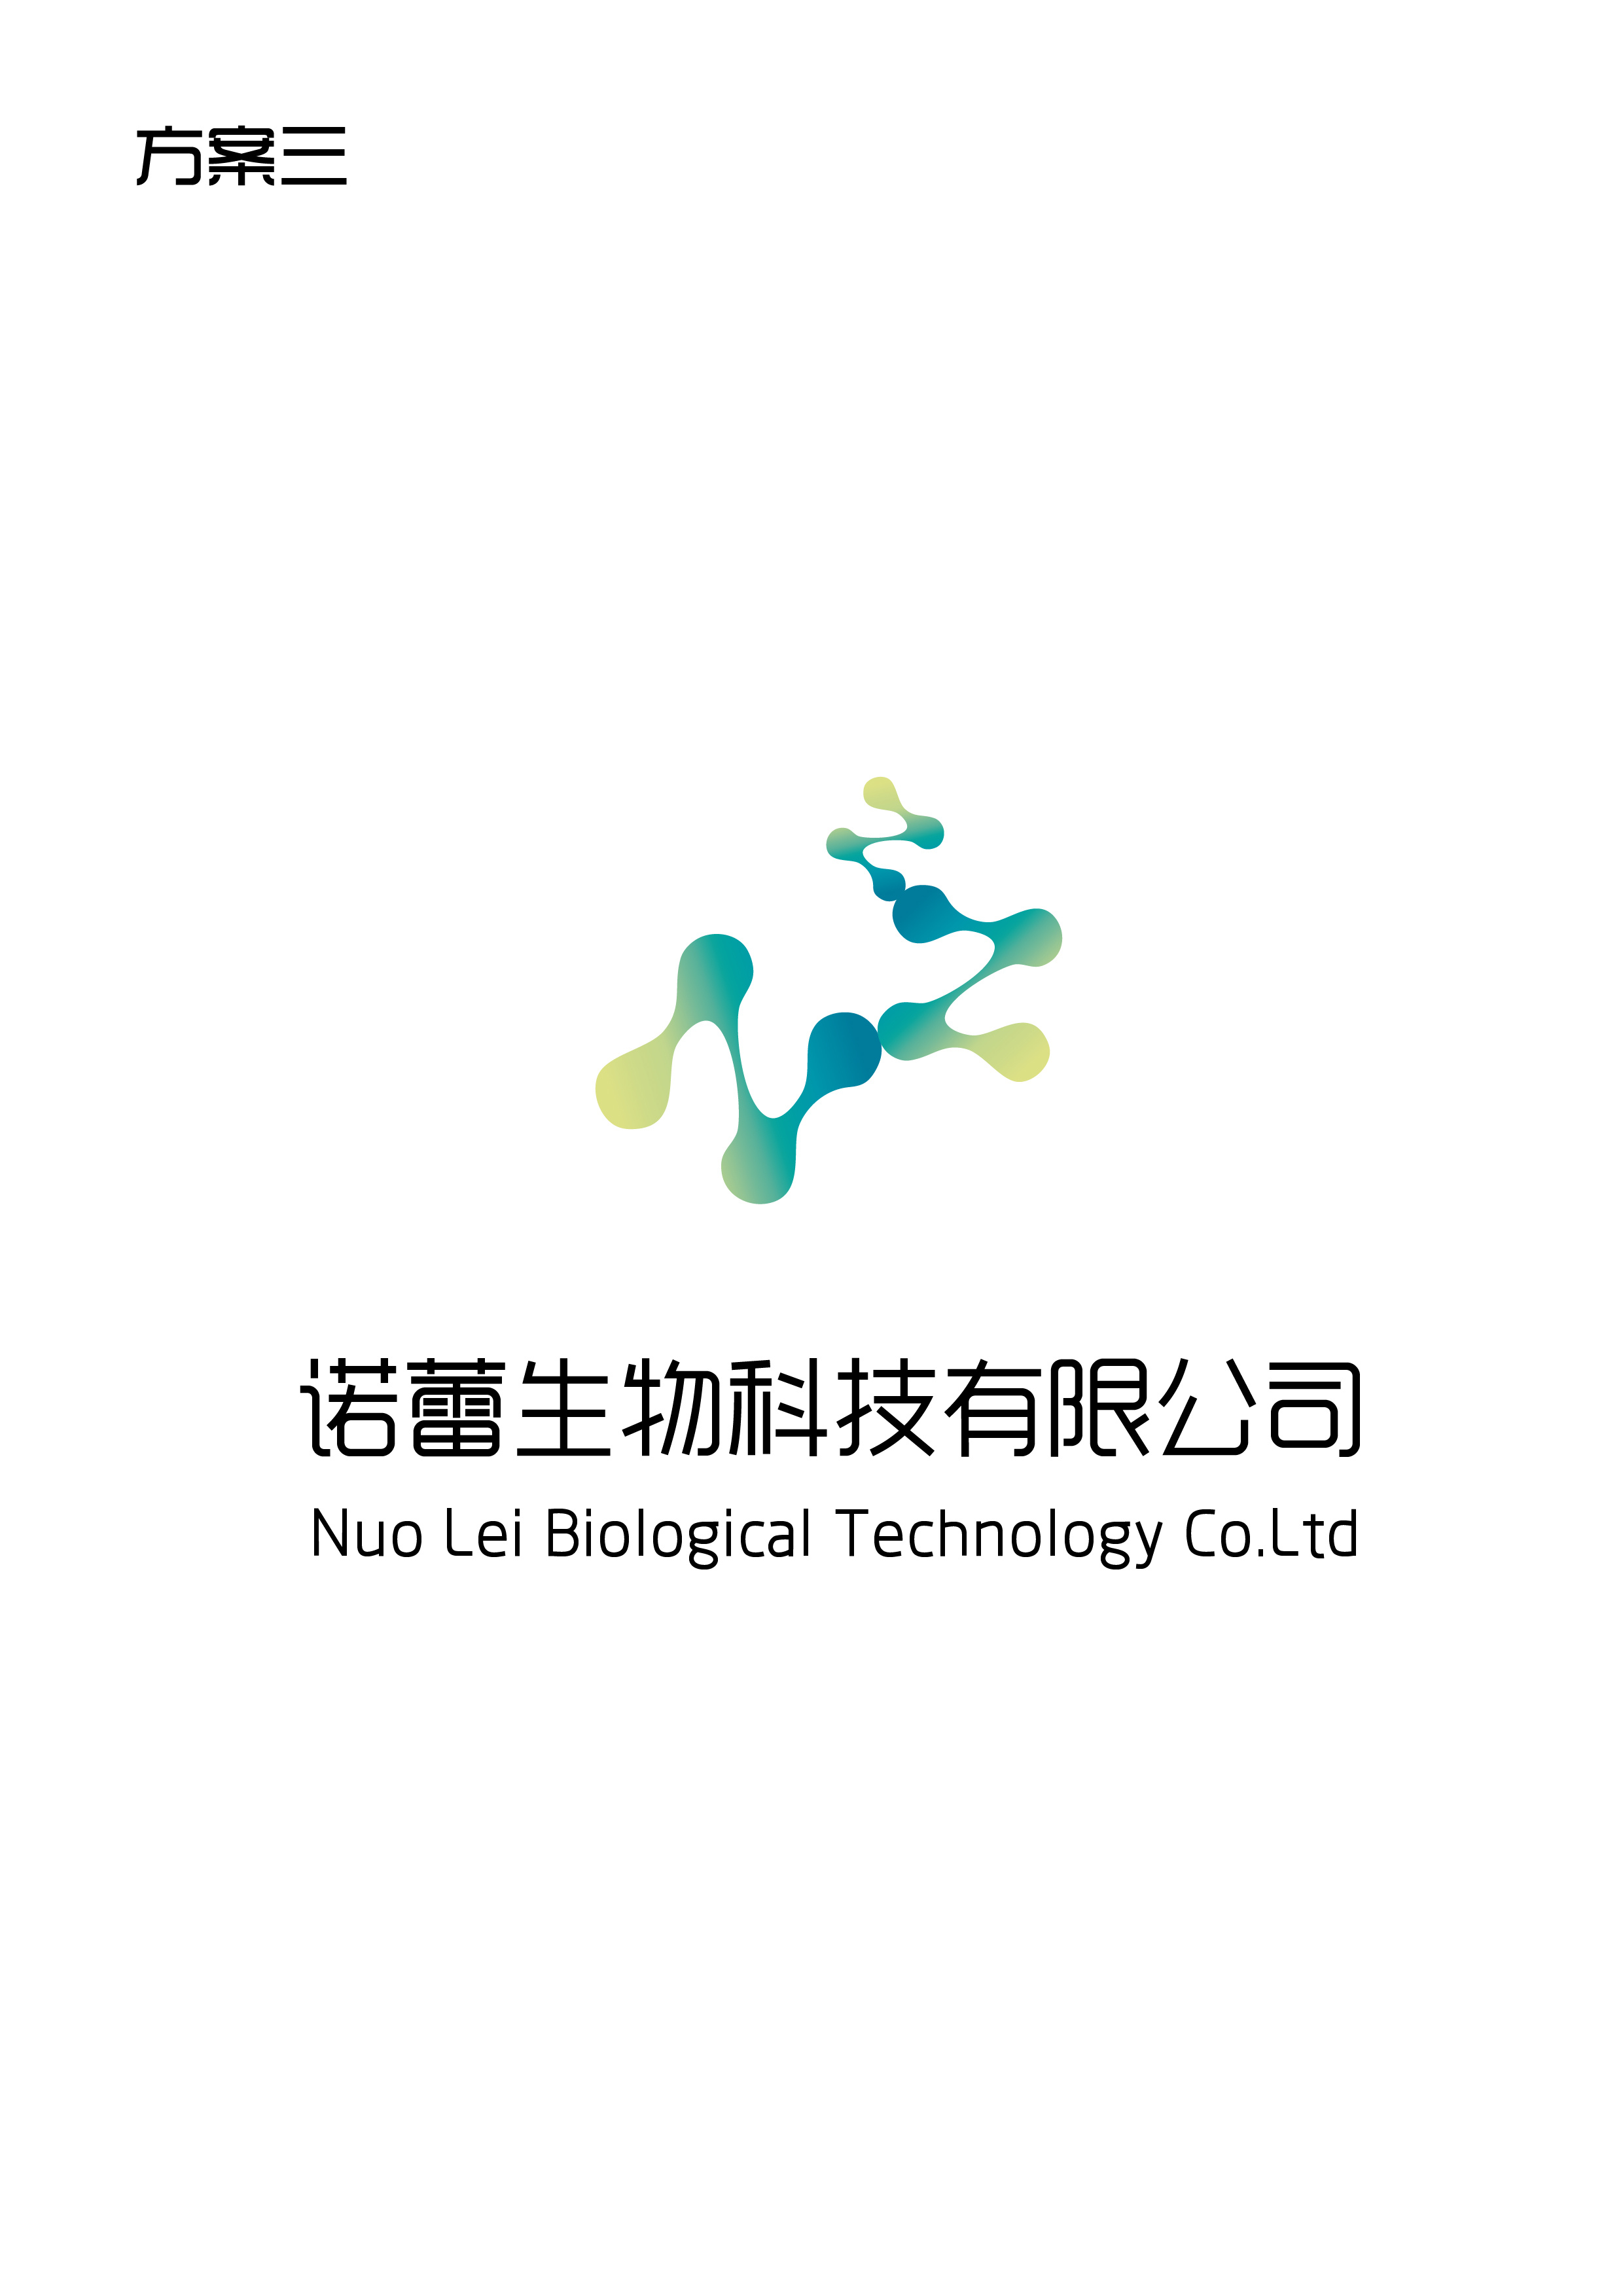 诺蕾生物科技有限公司logo设计